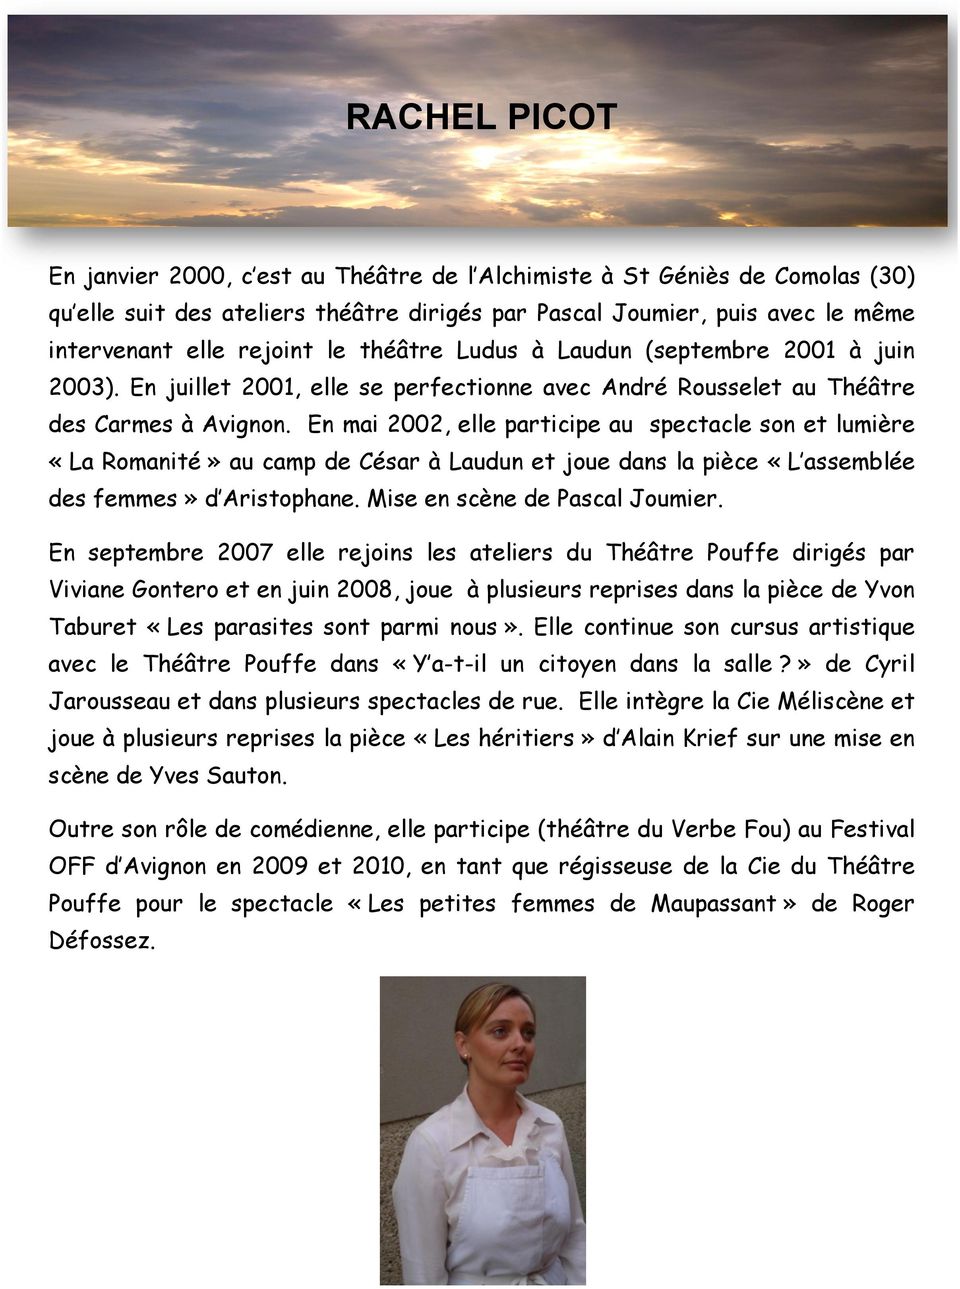 En mai 2002, elle participe au spectacle son et lumière «La Romanité» au camp de César à Laudun et joue dans la pièce «L assemblée des femmes» d Aristophane. Mise en scène de Pascal Joumier.